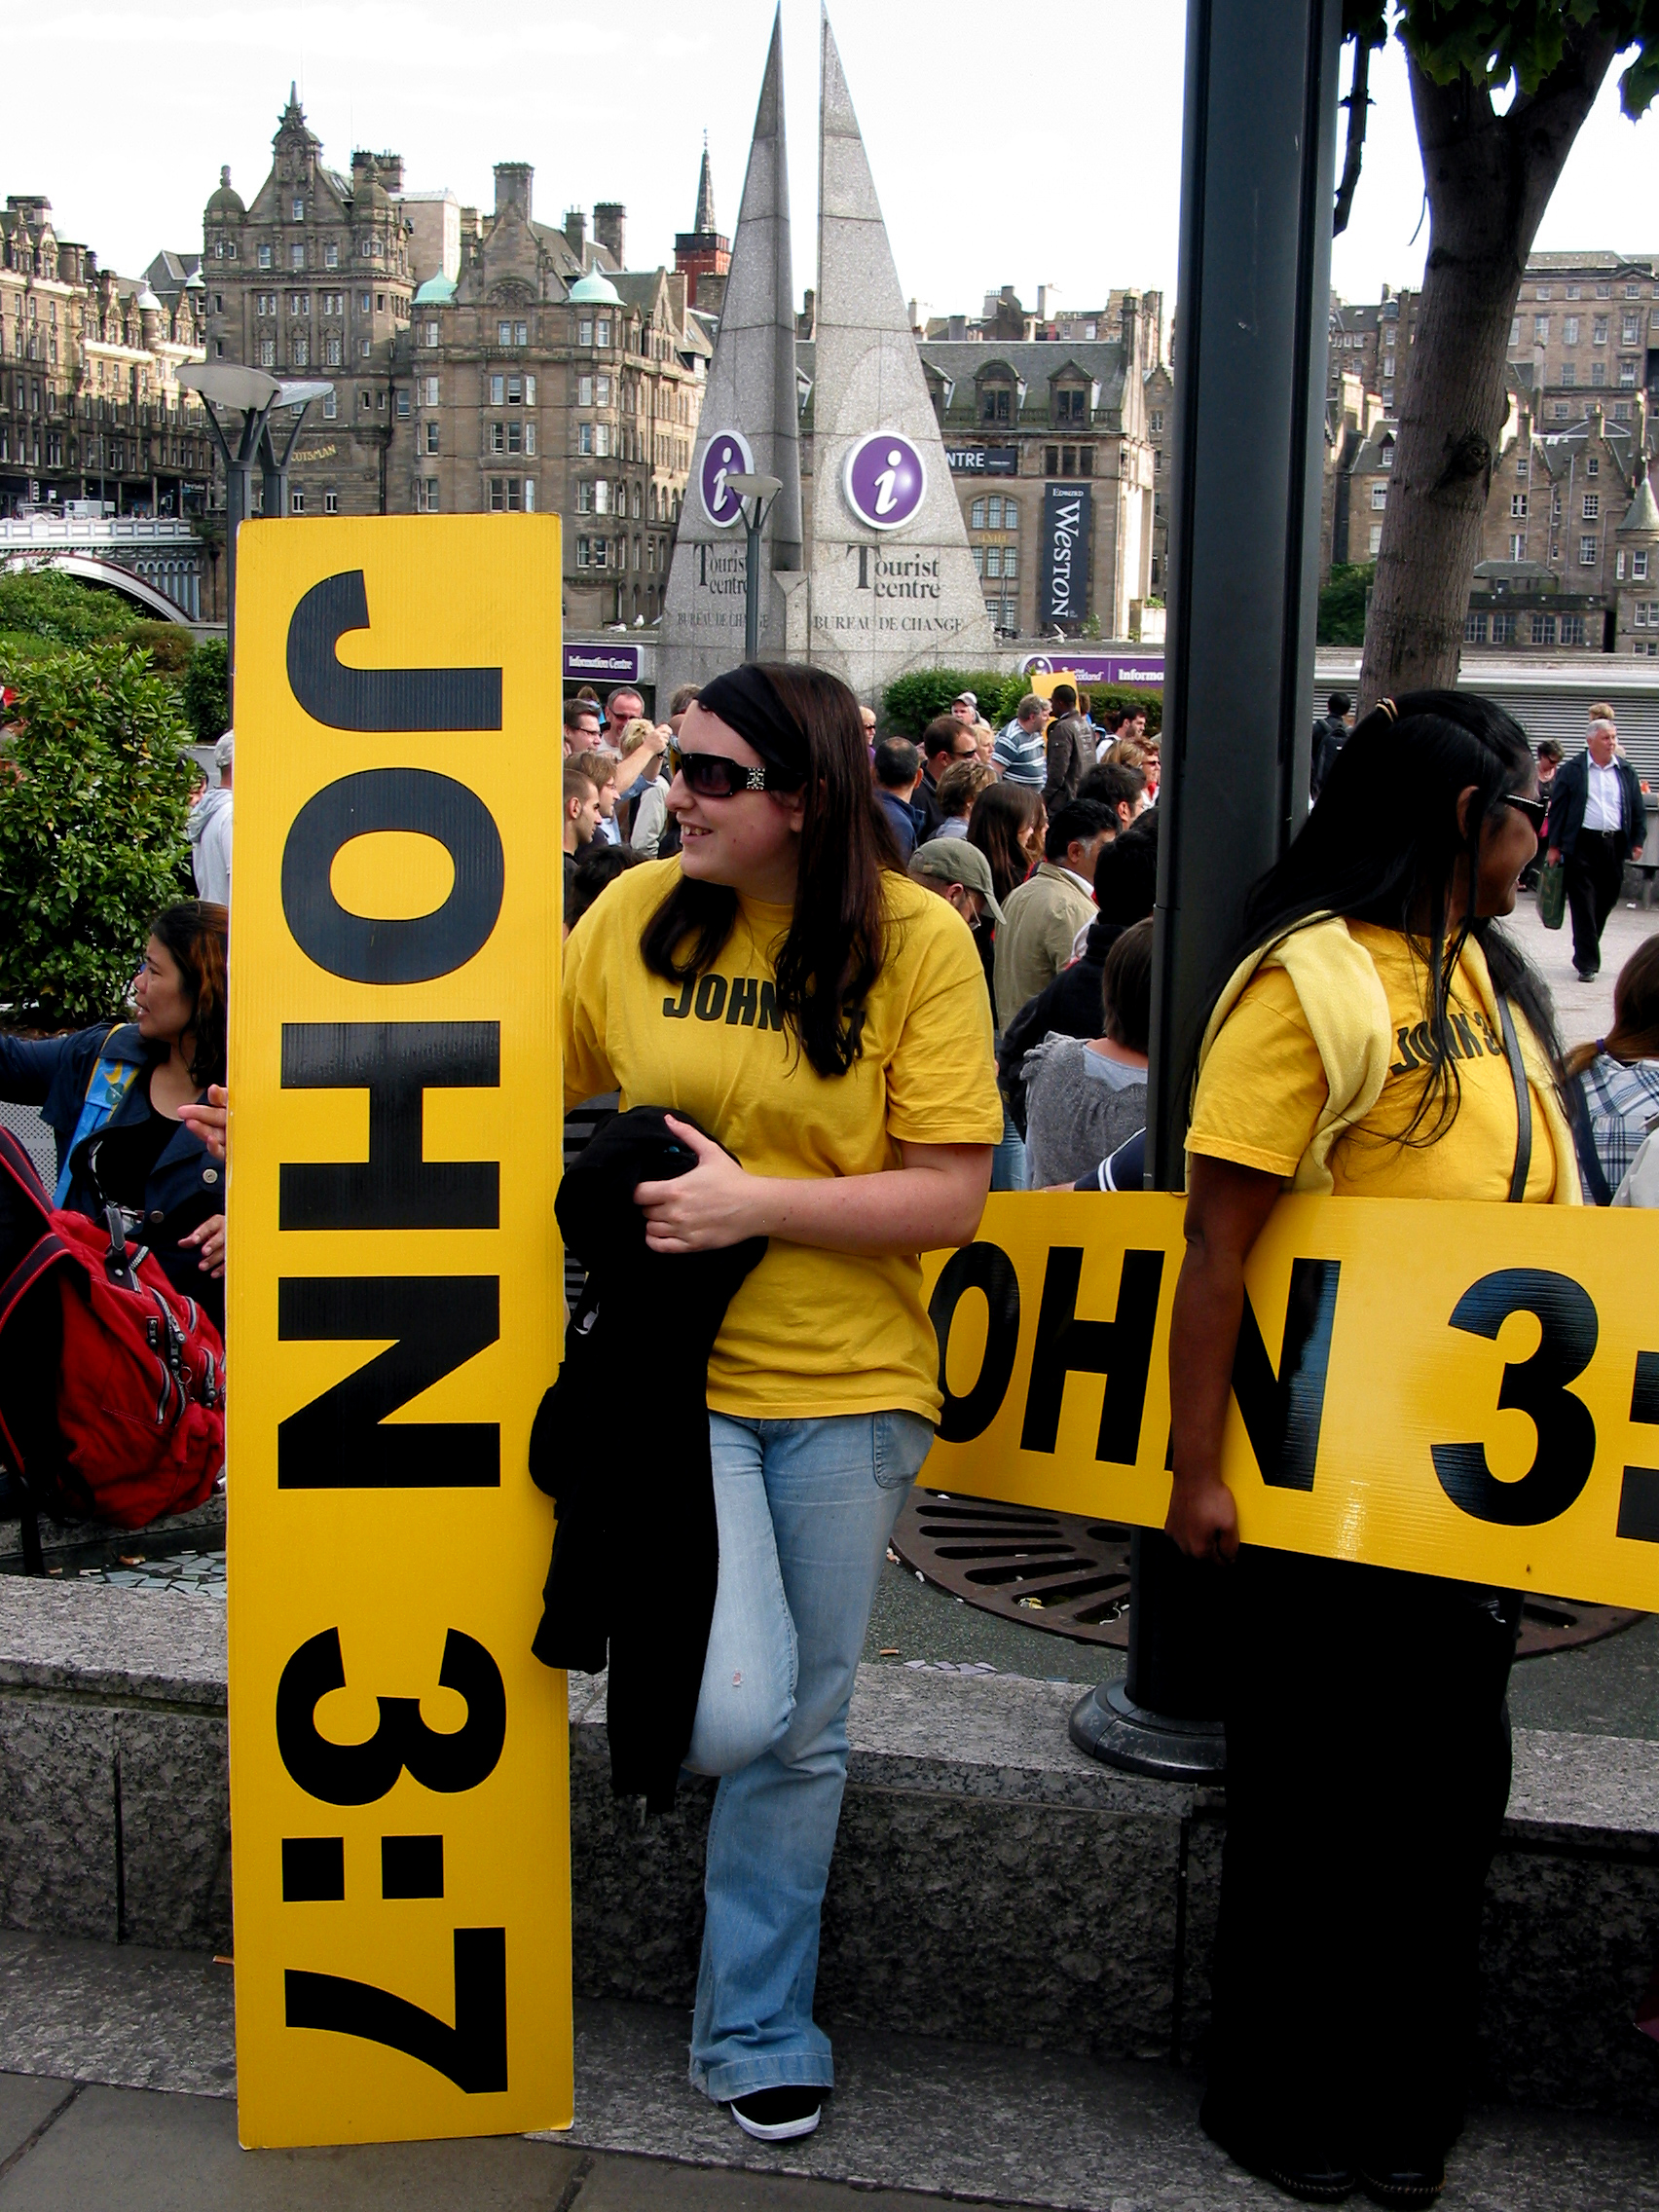 John 3 7 Edinburgh